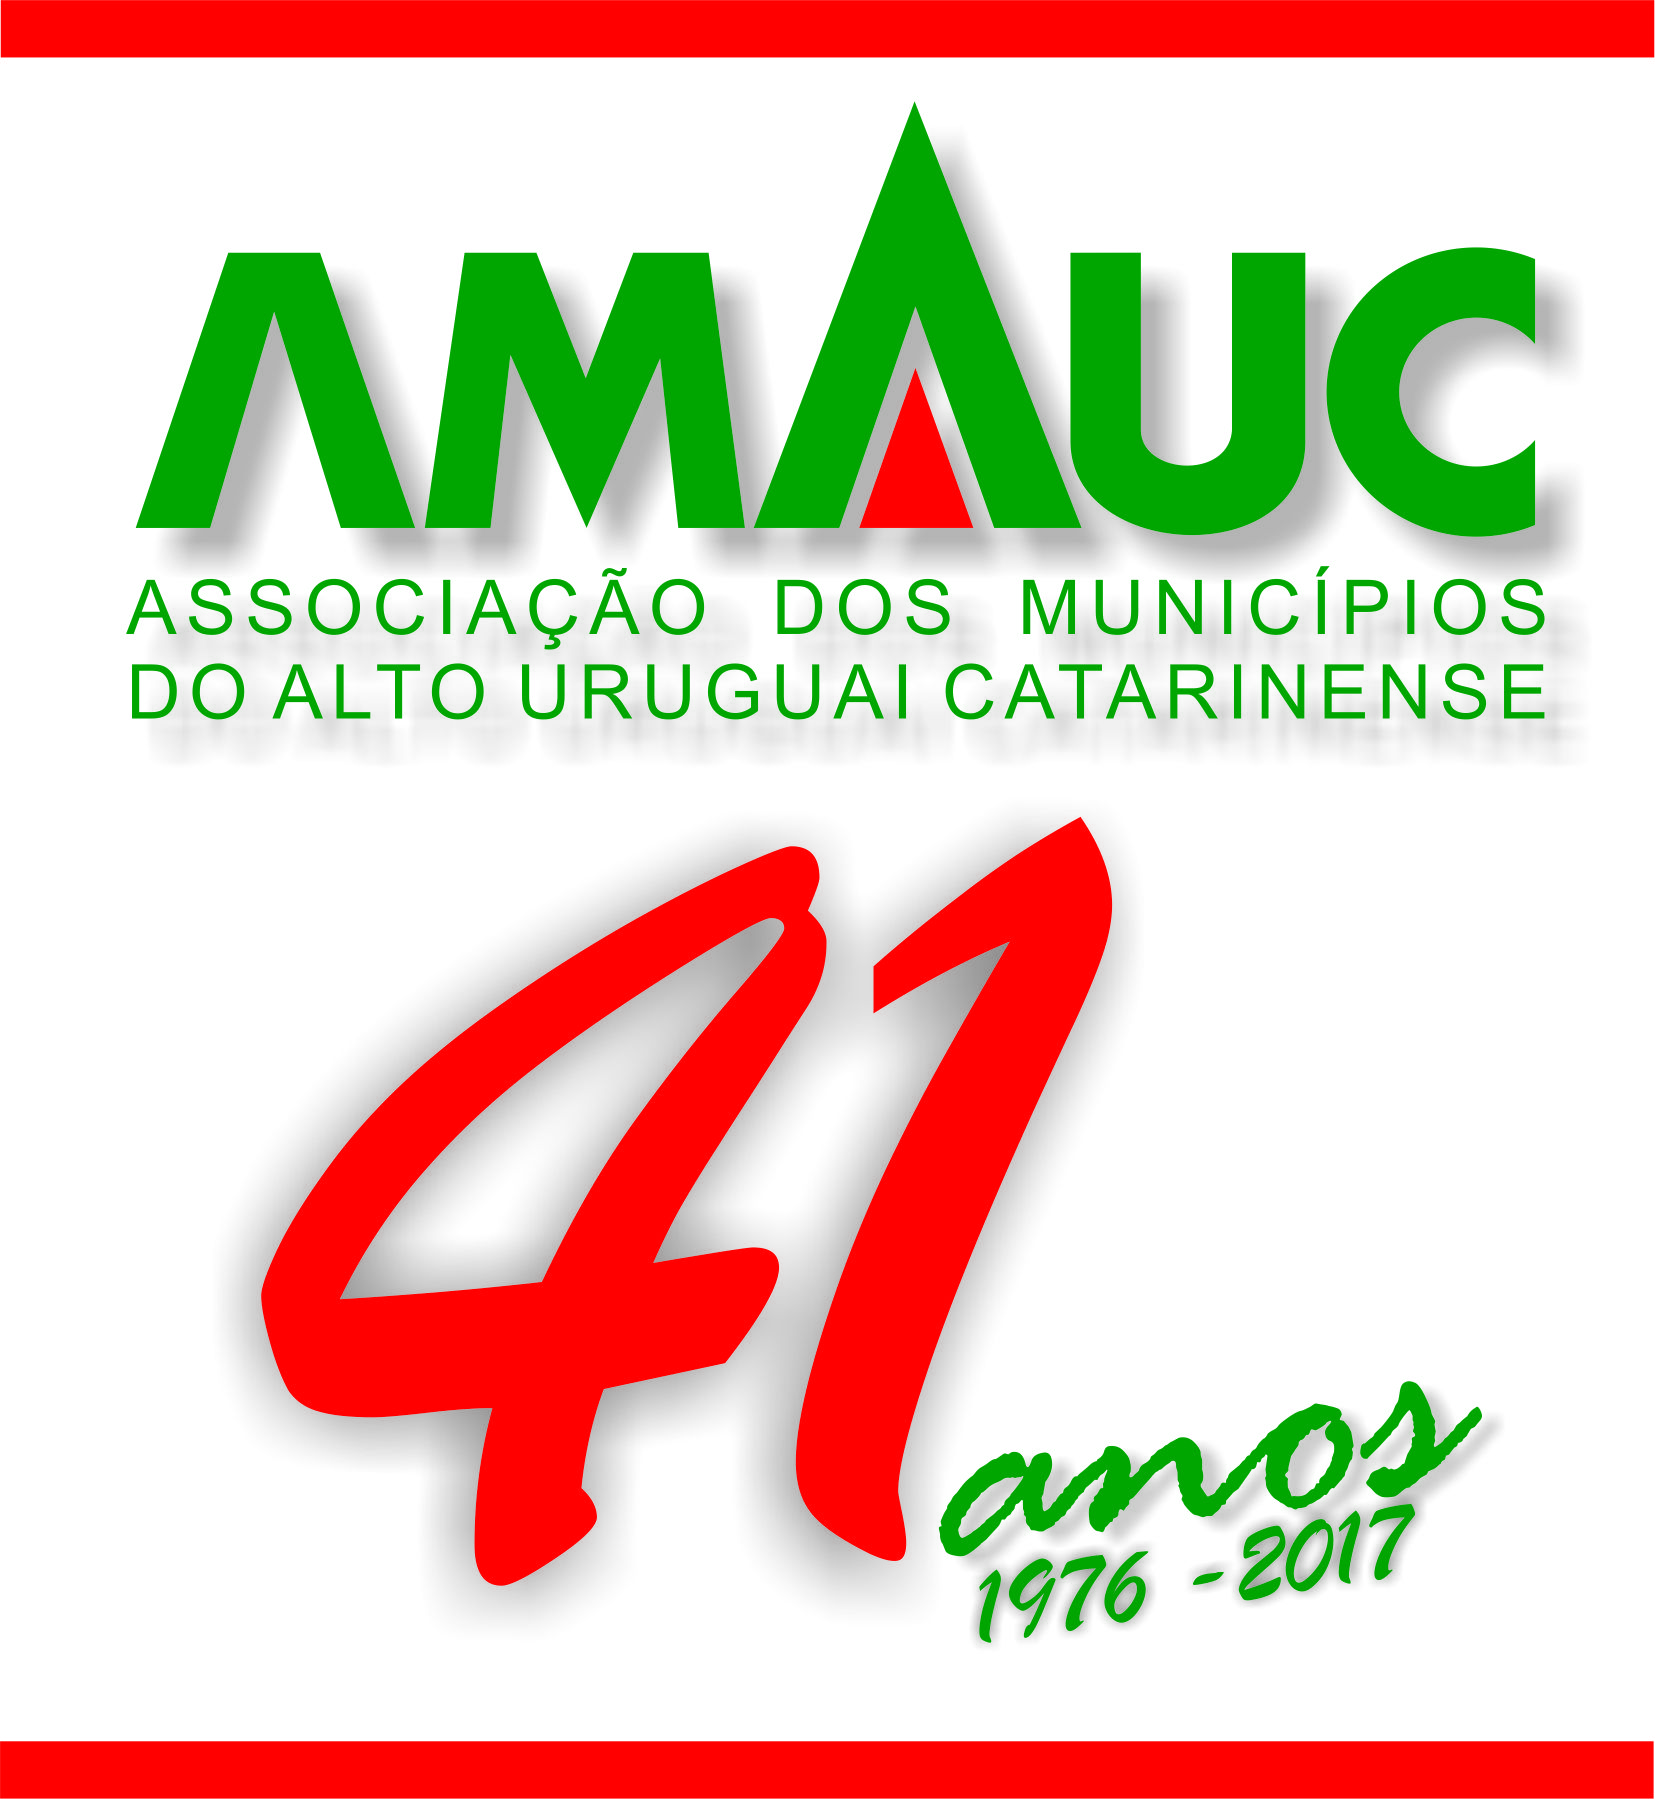 You are currently viewing 41 ANOS ASSESSORANDO OS MUNICÍPIOS DO ALTO URUGUAI CATARINENSE